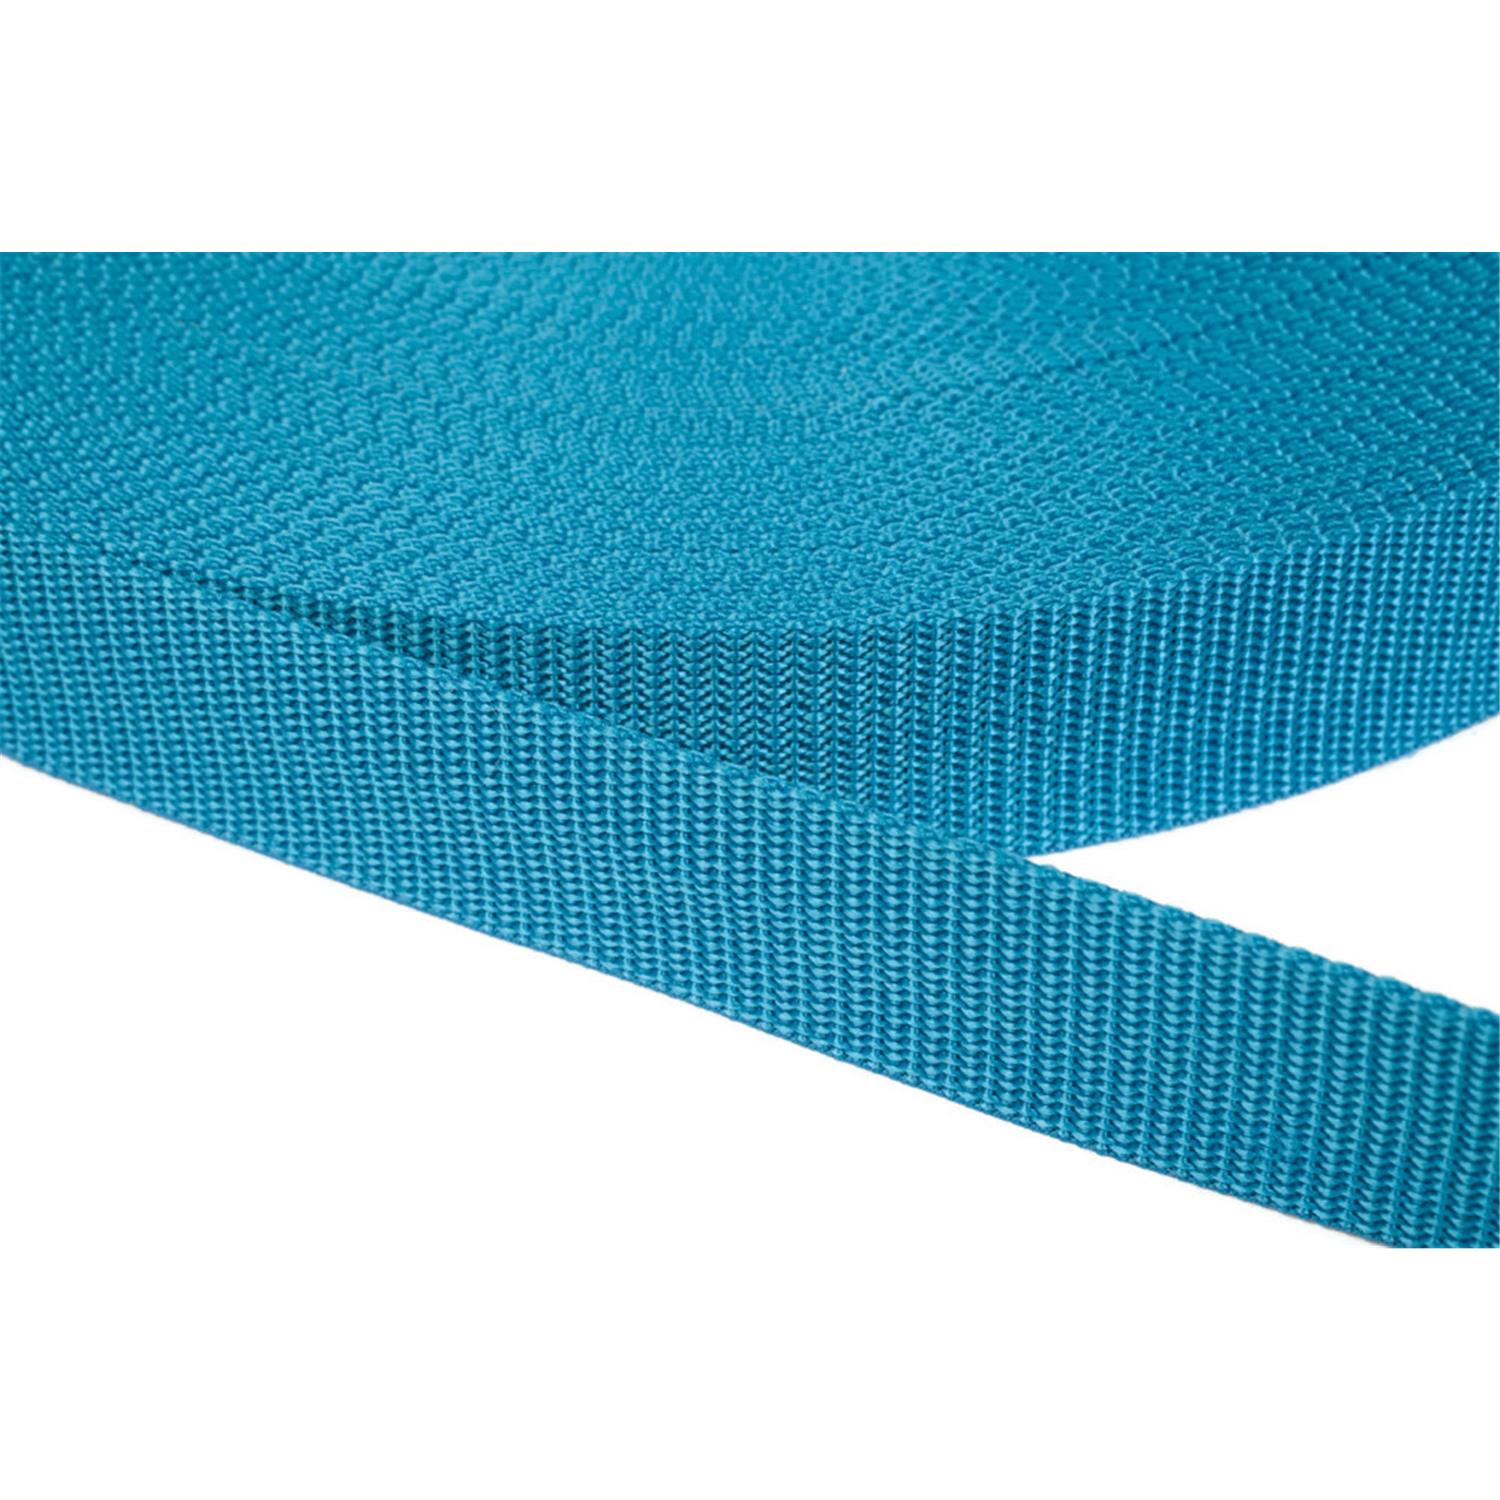 Gurtband 30mm breit aus Polypropylen in 41 Farben 29 - türkis 6 Meter